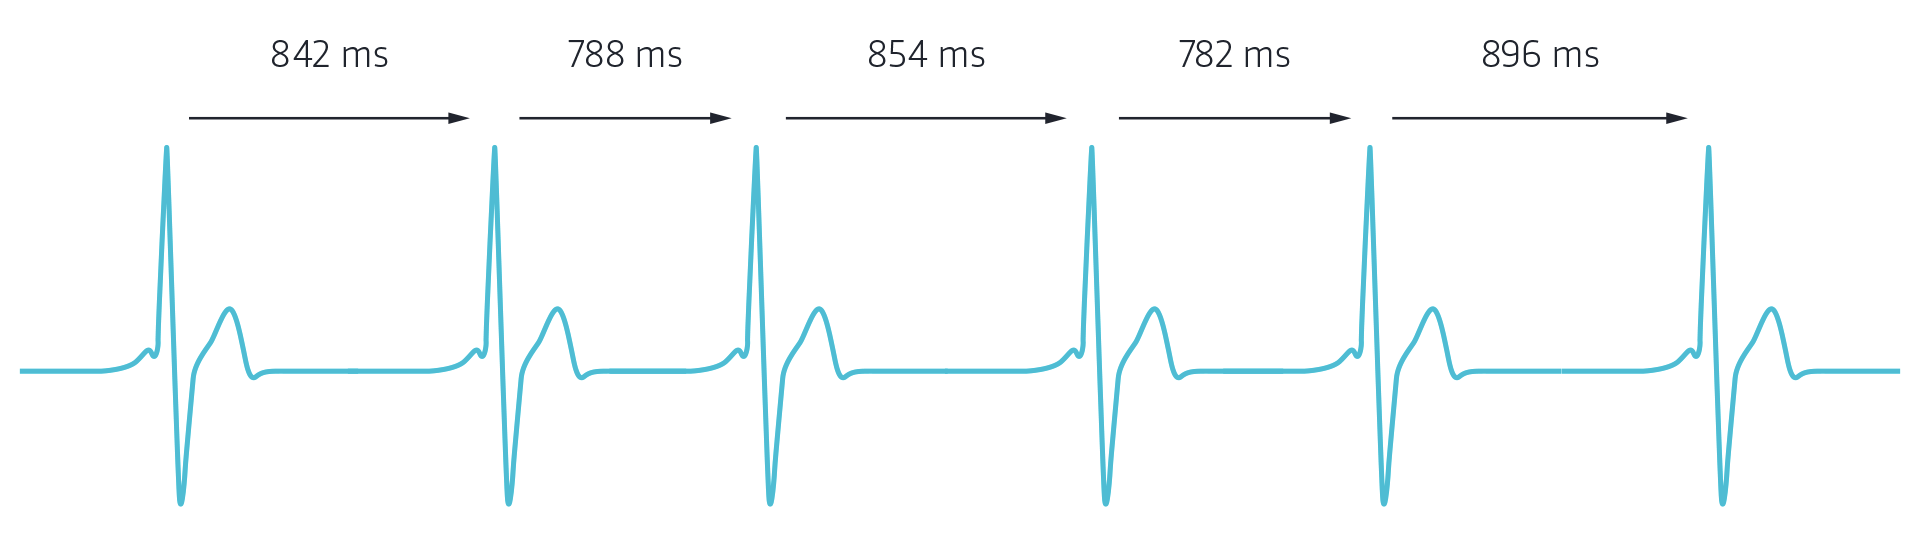 Berechnung der Herzfrequenzvariabilität anhand der R-Zacken-Analyse in Millisekunden. 